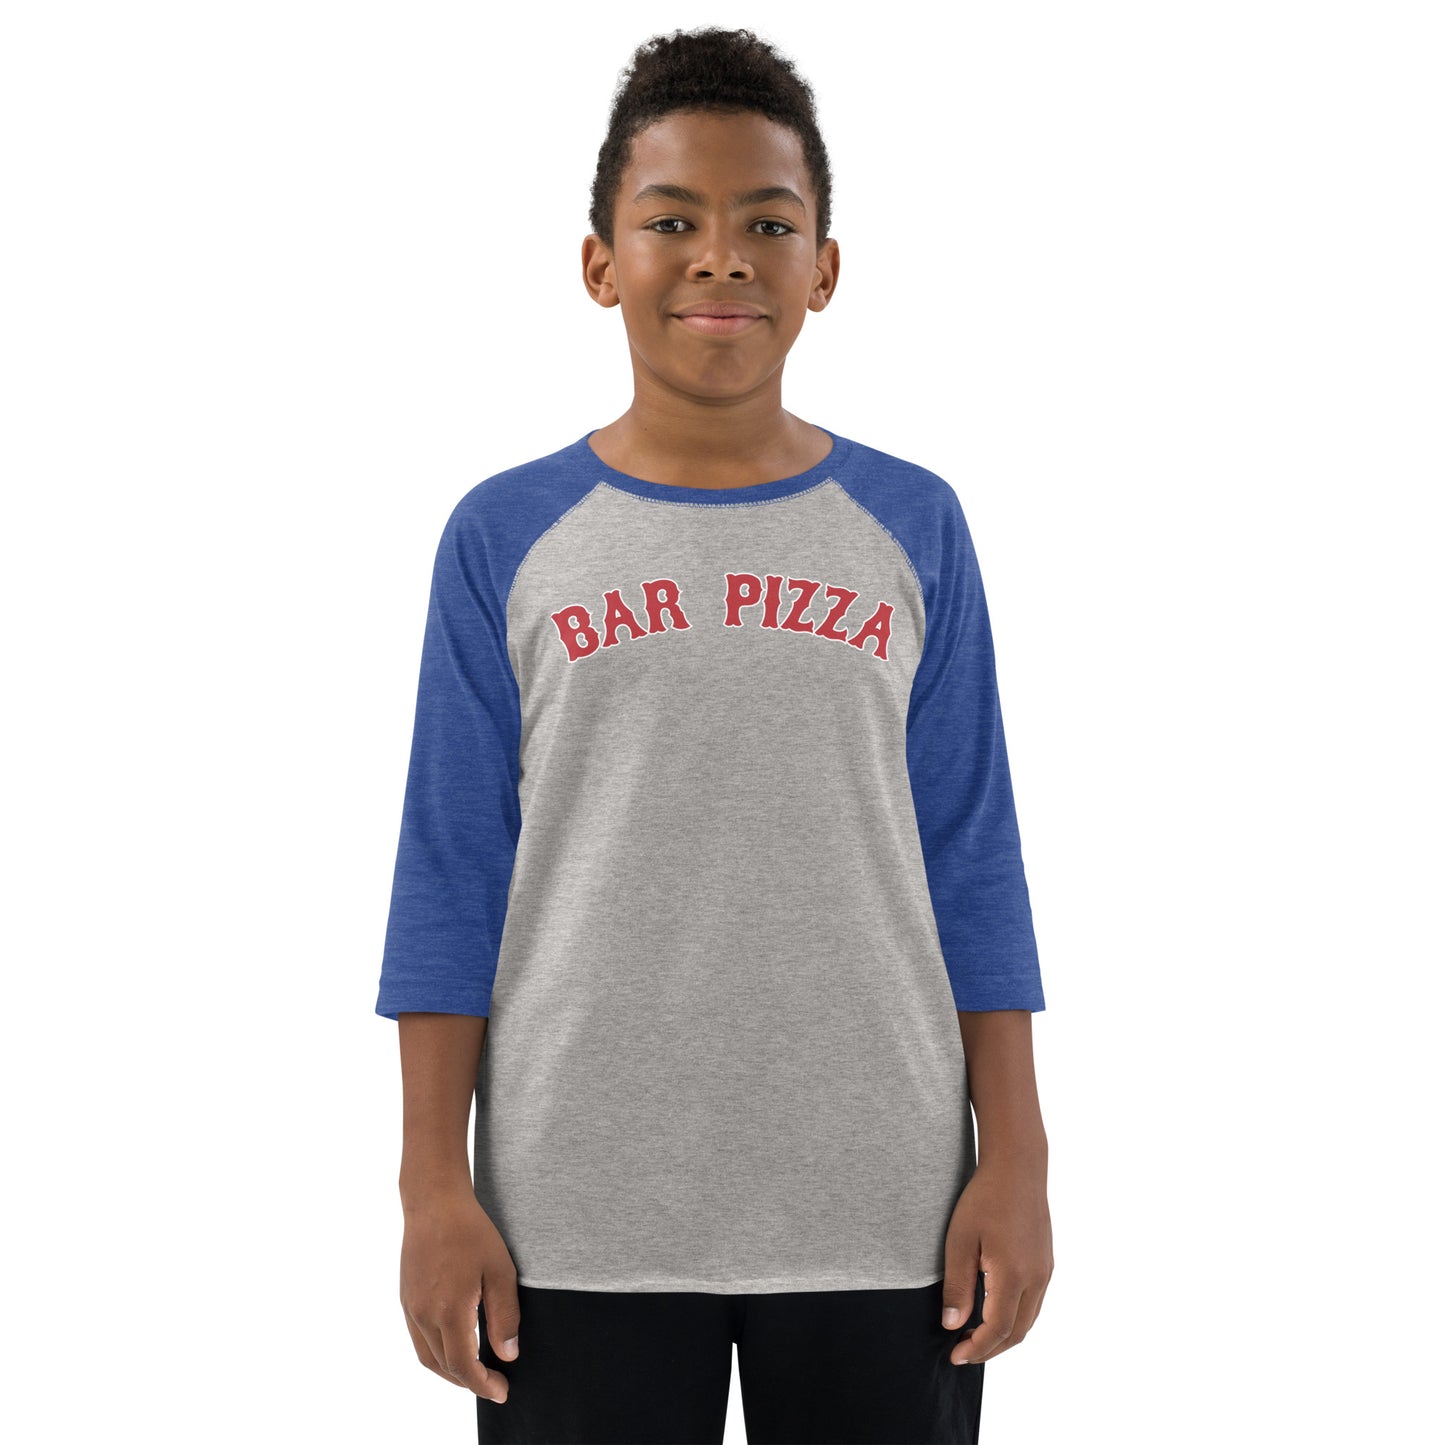 Bar Pizza Kids Baseball Shirt